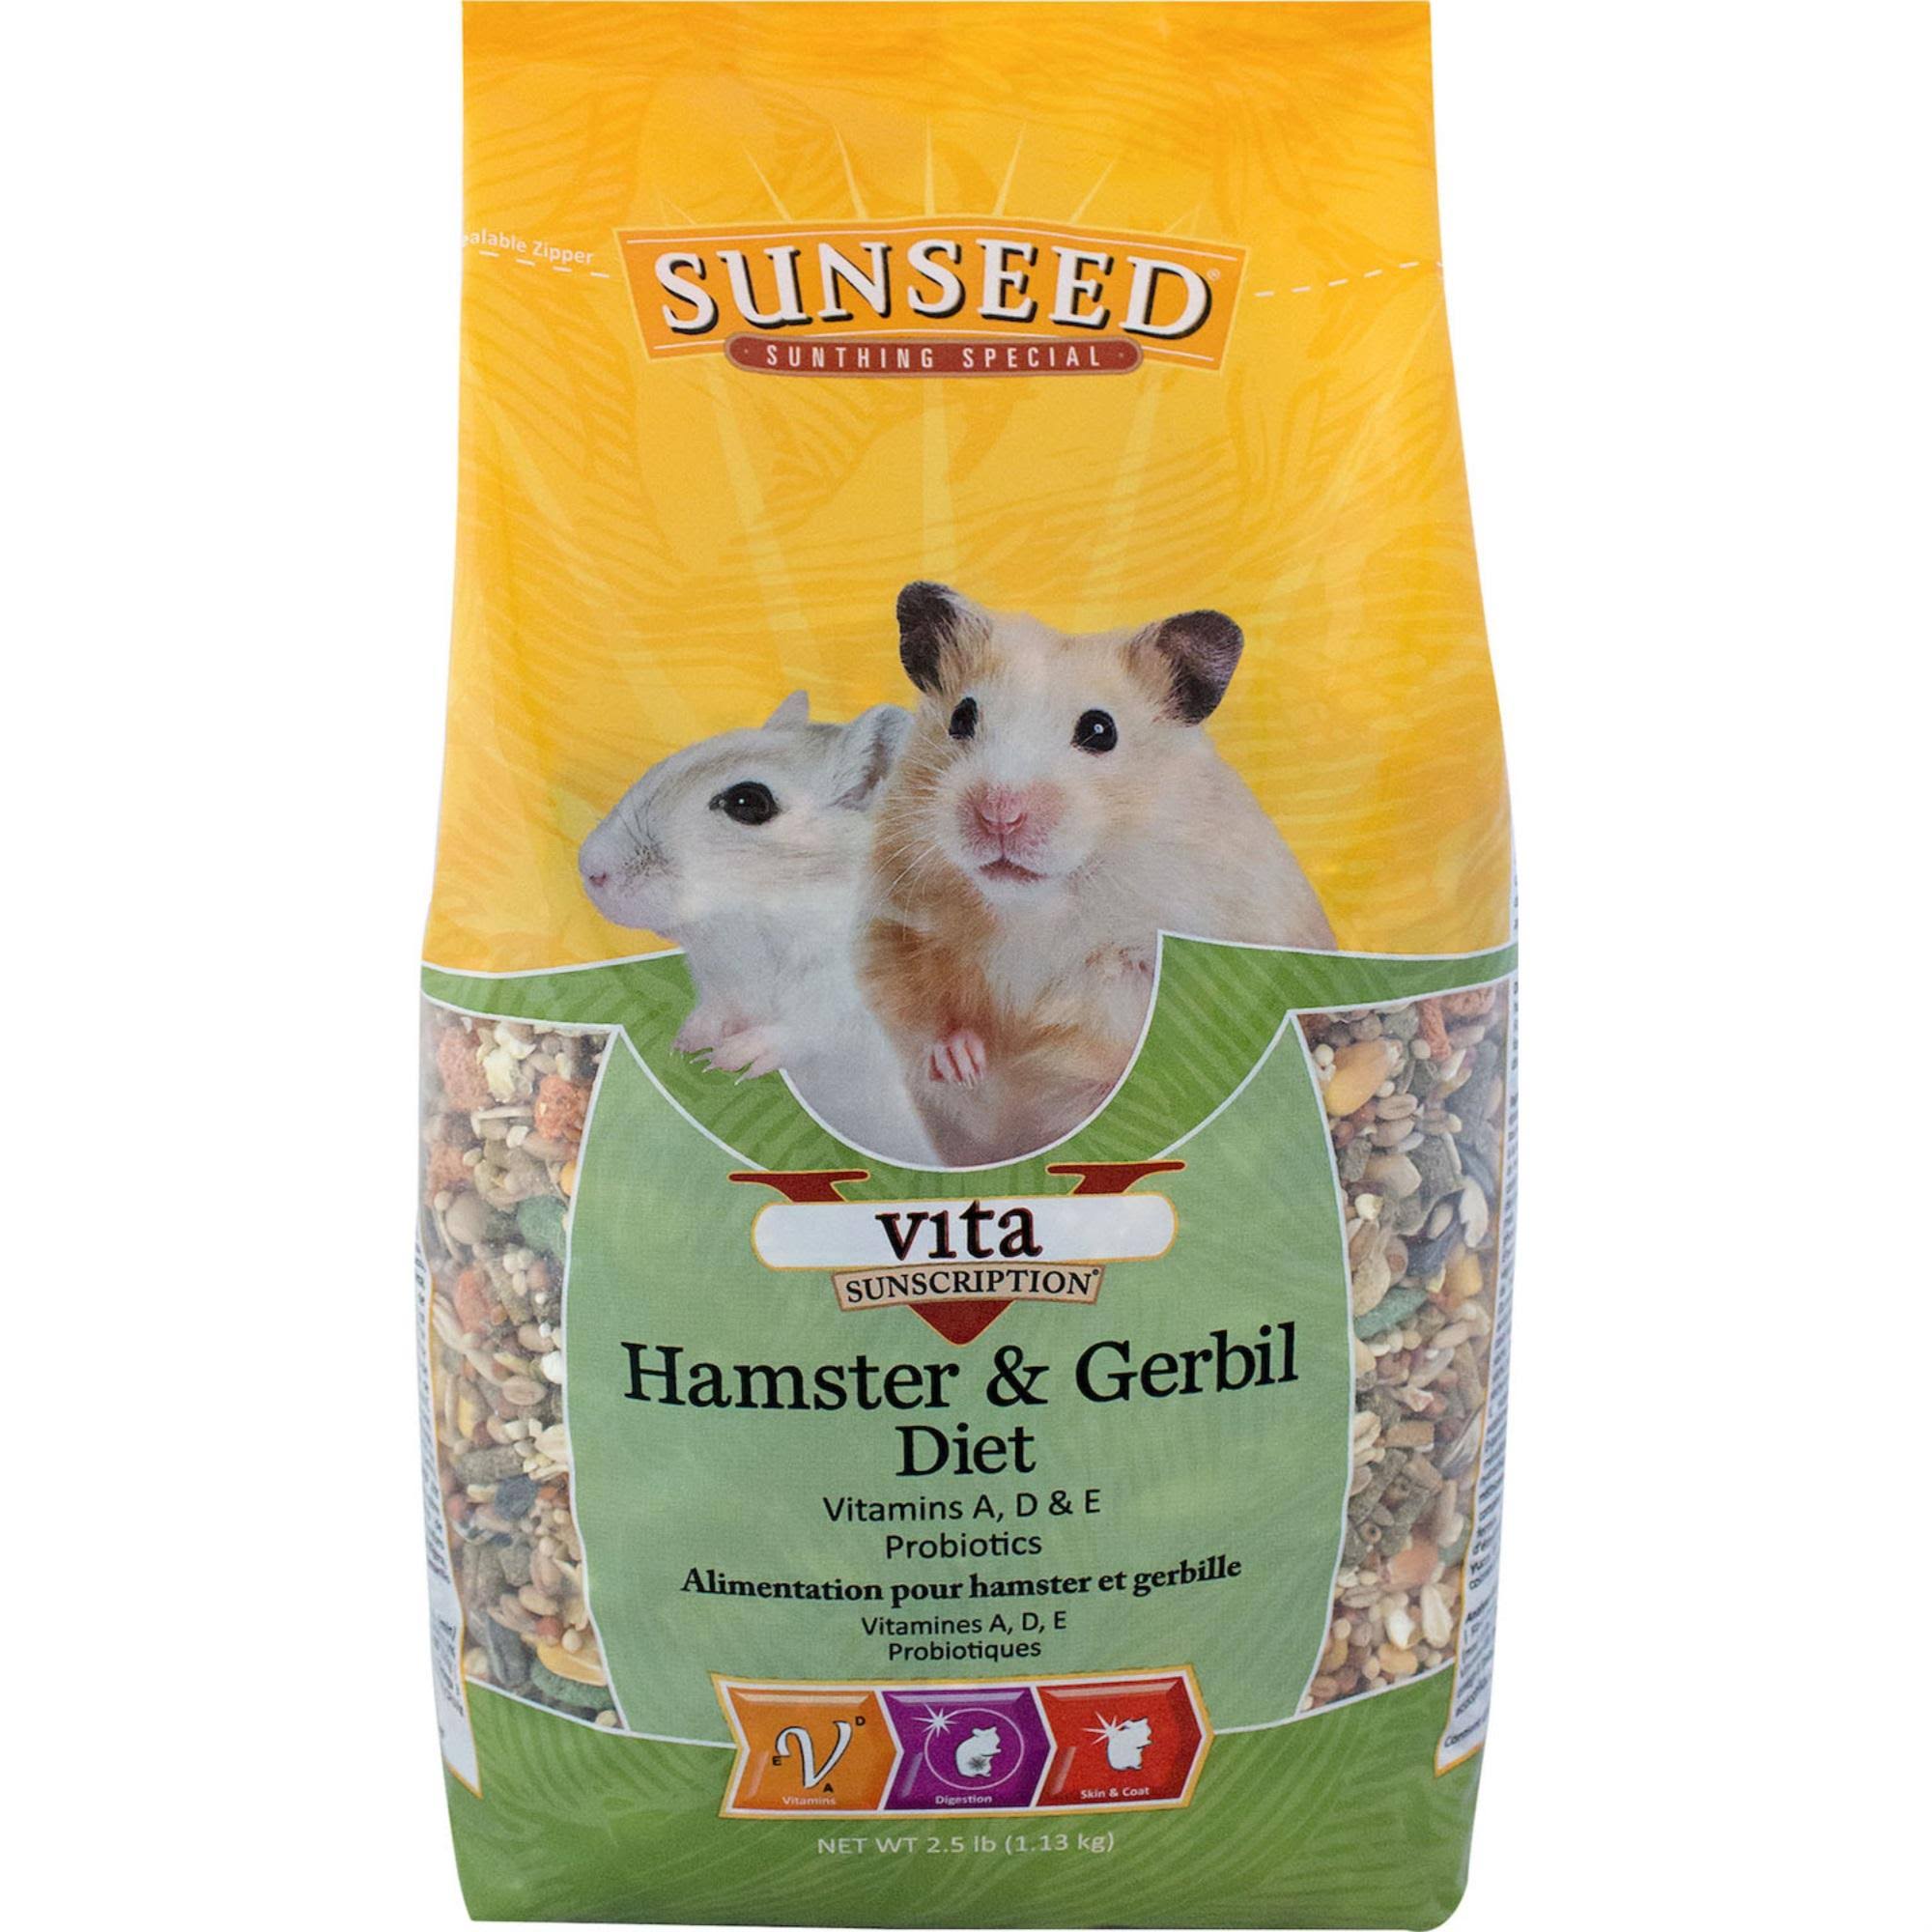 Sunseed Vita Hamster & Gerbil Food 2.5Lb